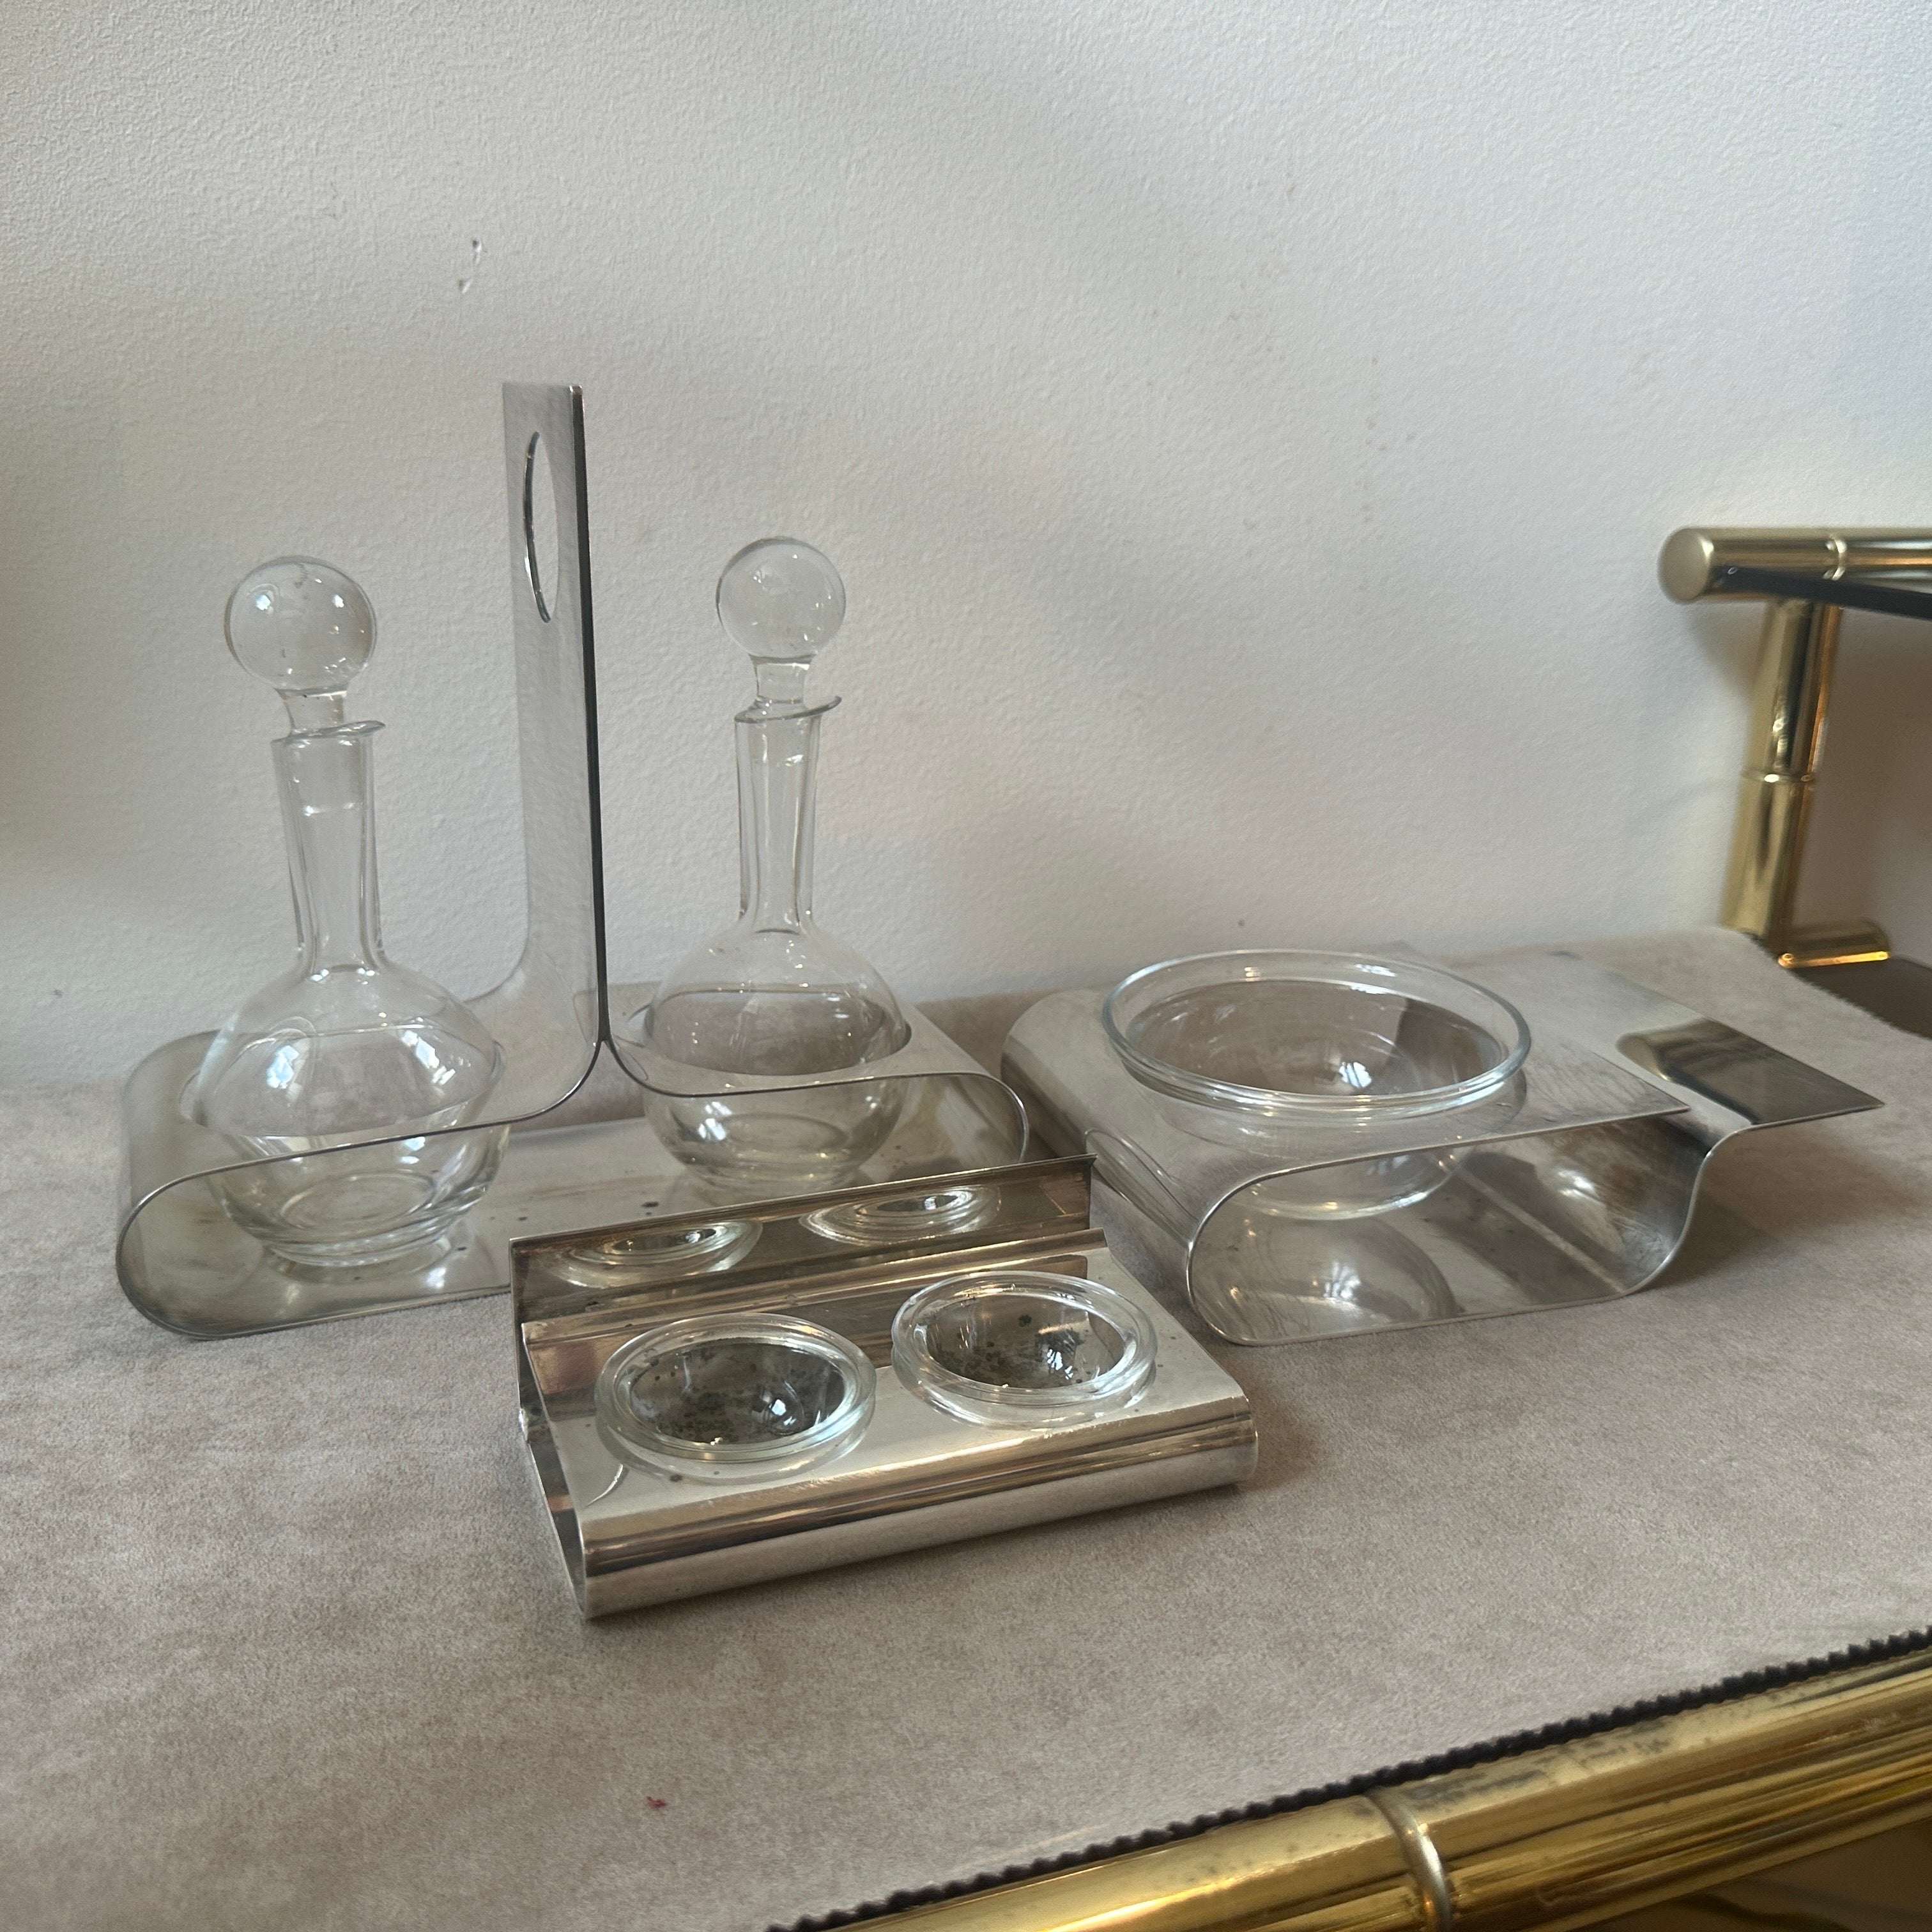 
Ce service en métal argenté conçu par Lino Sabattini est composé d'une burette pour l'huile et le vinaigre avec des ampoules en verre de cristal, d'un bol à fromage et d'une salière et d'une poivrière. Les dimensions des deux autres pièces sont